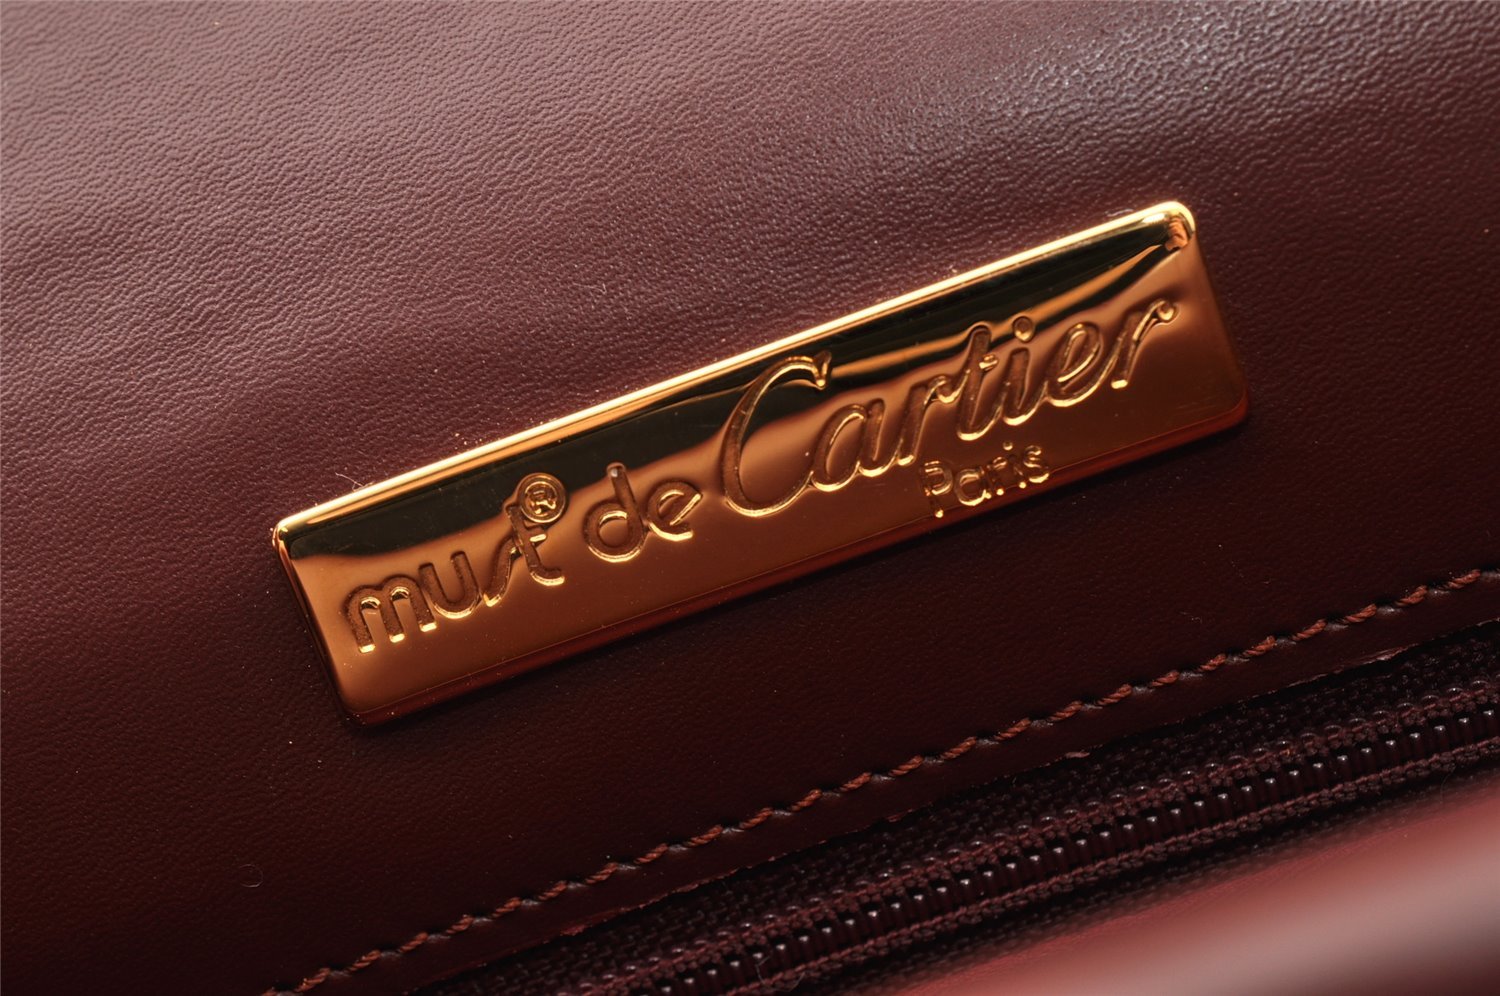 Authentic Cartier Must de Cartier Leather Shoulder Cross Bag Bordeaux Red 7870I